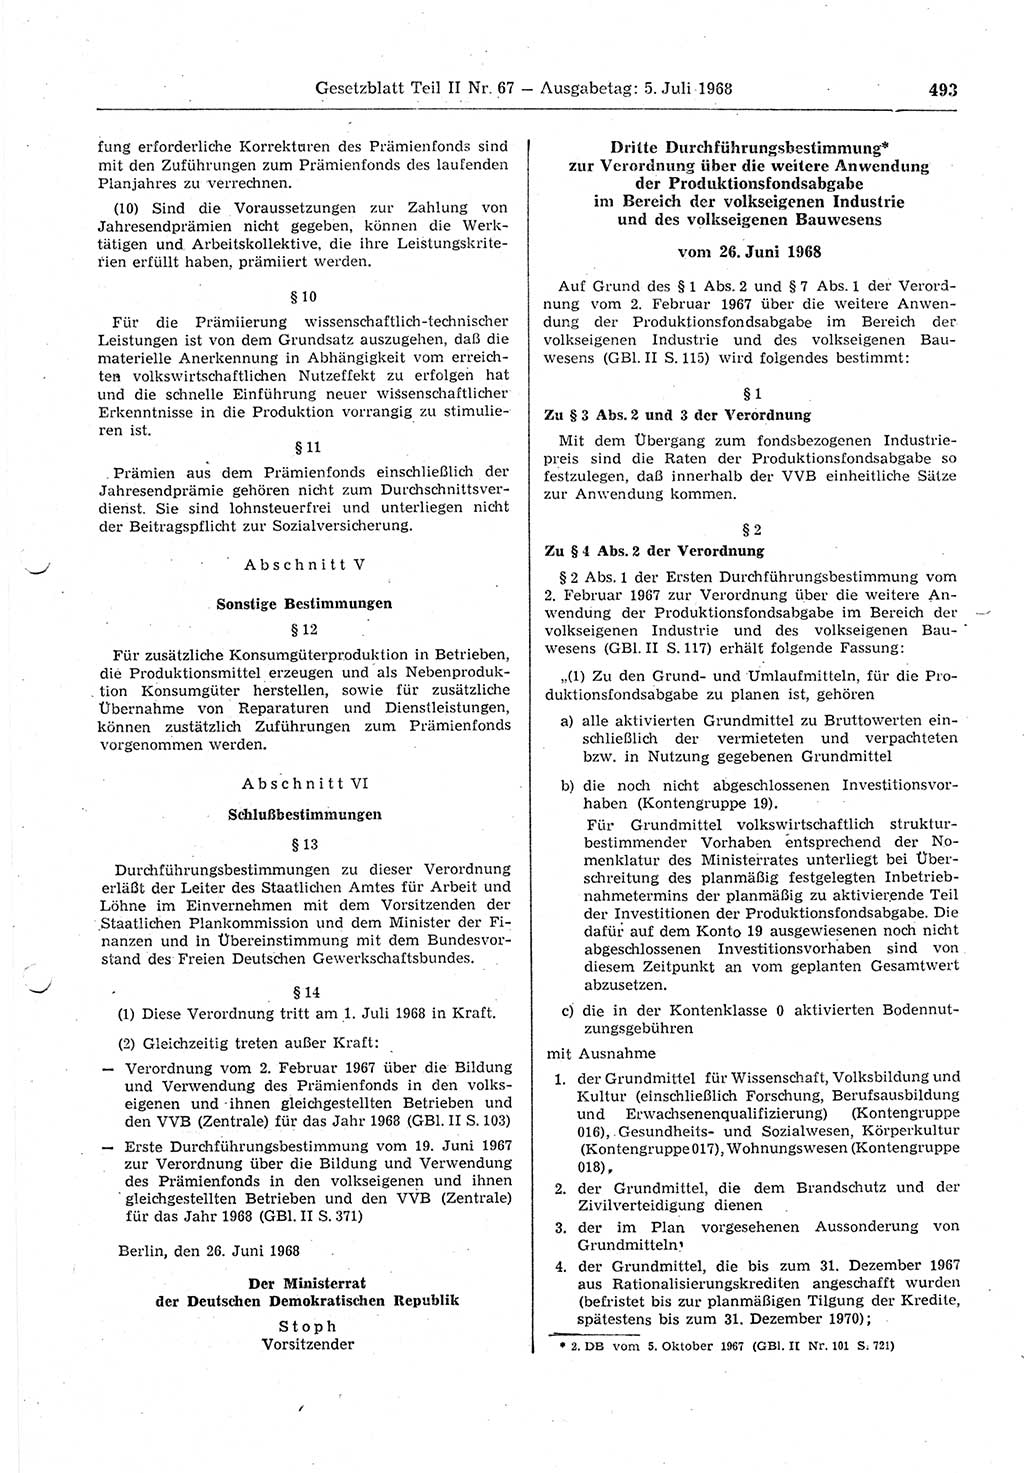 Gesetzblatt (GBl.) der Deutschen Demokratischen Republik (DDR) Teil ⅠⅠ 1968, Seite 493 (GBl. DDR ⅠⅠ 1968, S. 493)